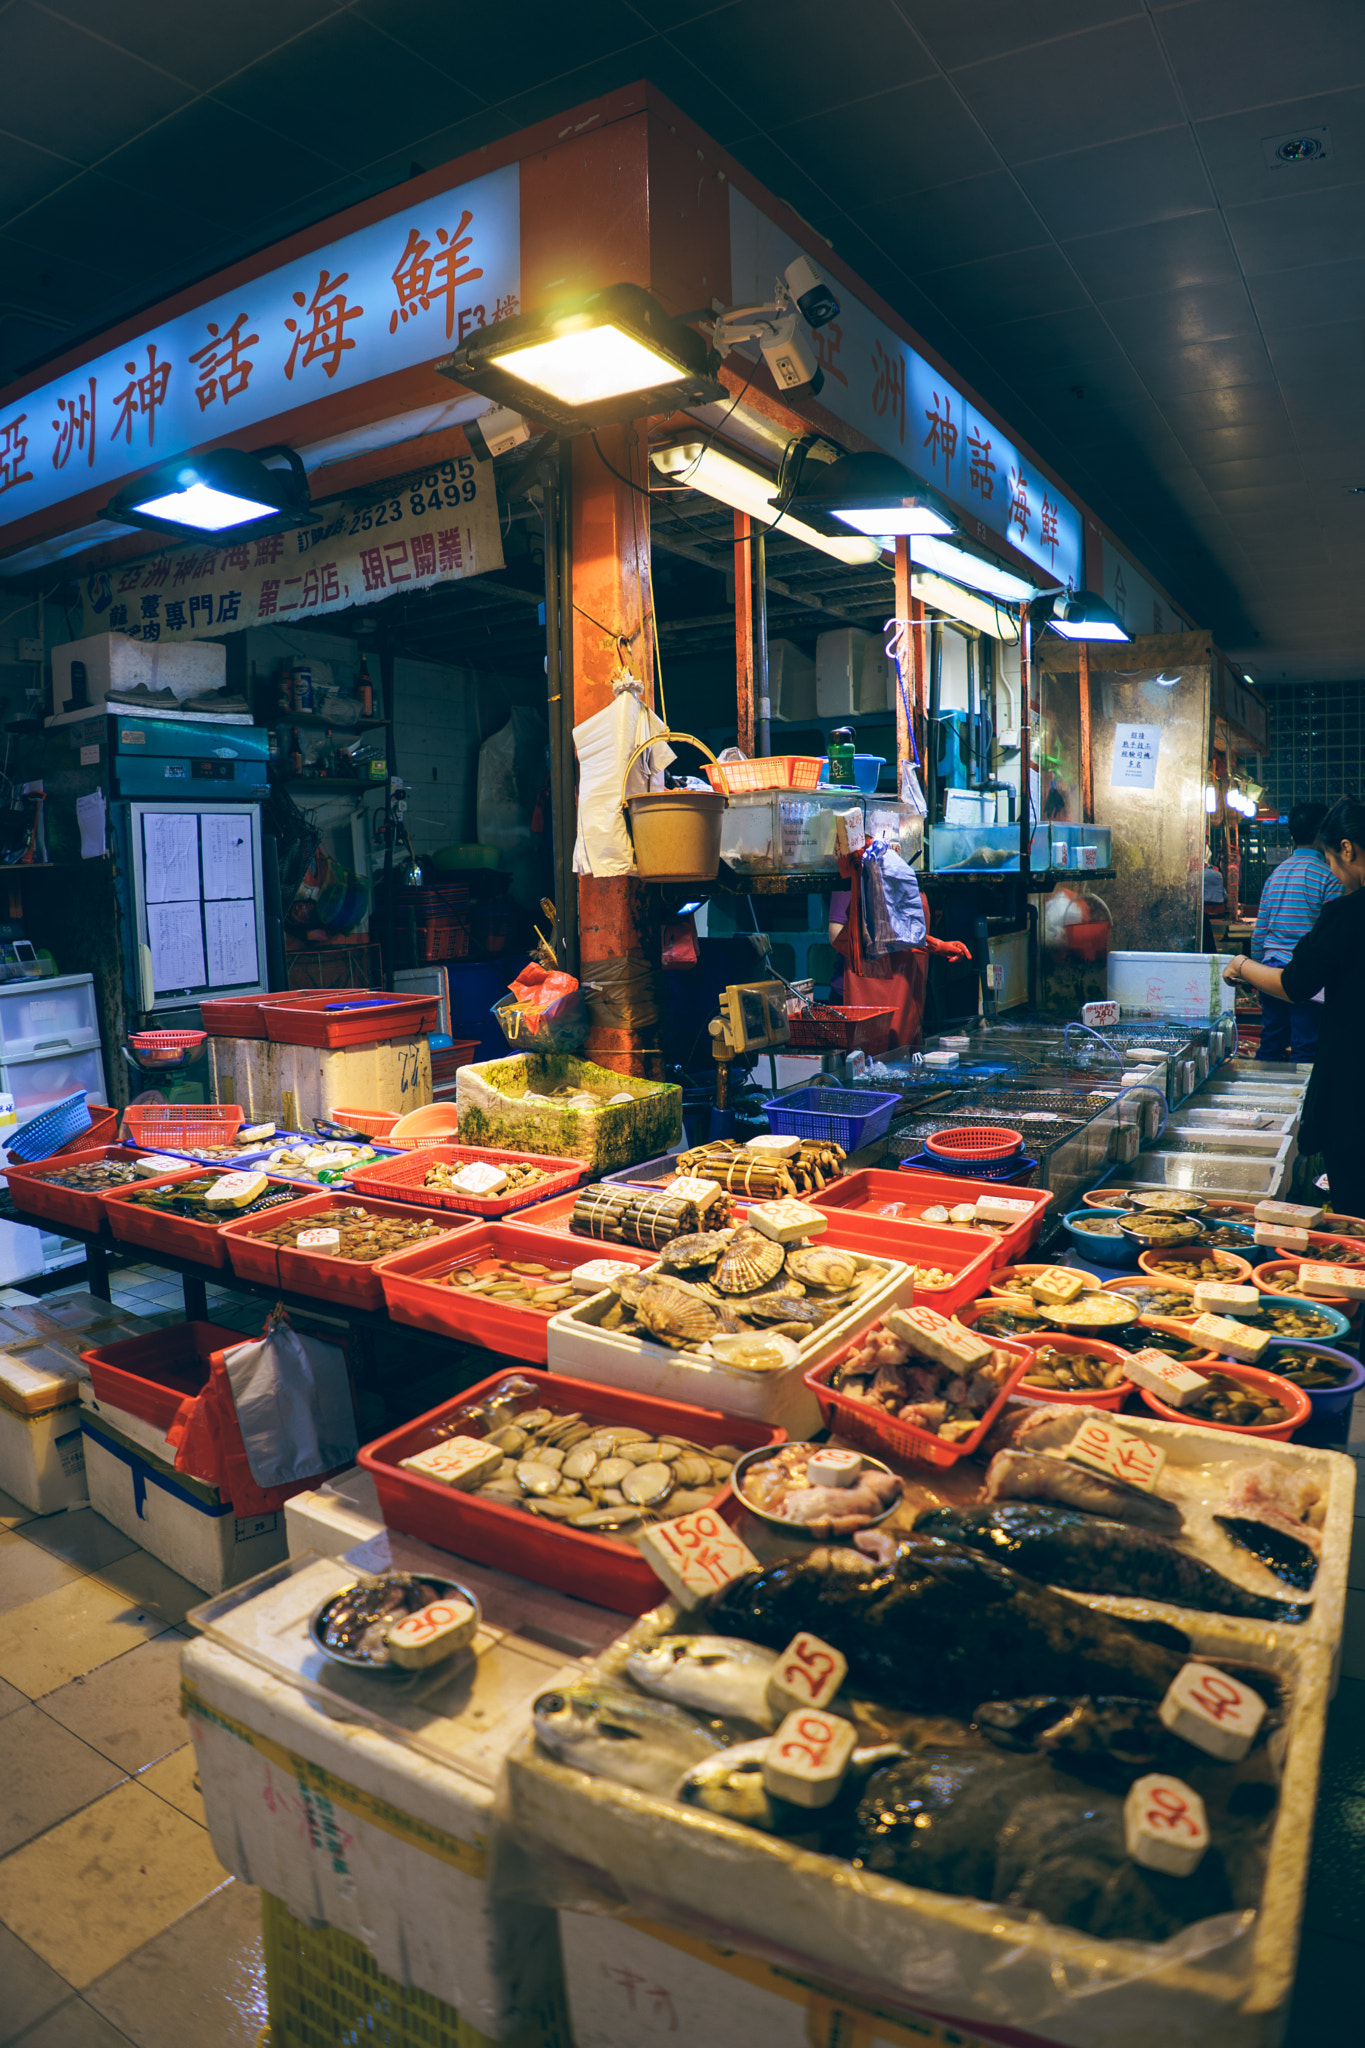 FE 21mm F2.8 sample photo. Local hong kong fish market photography